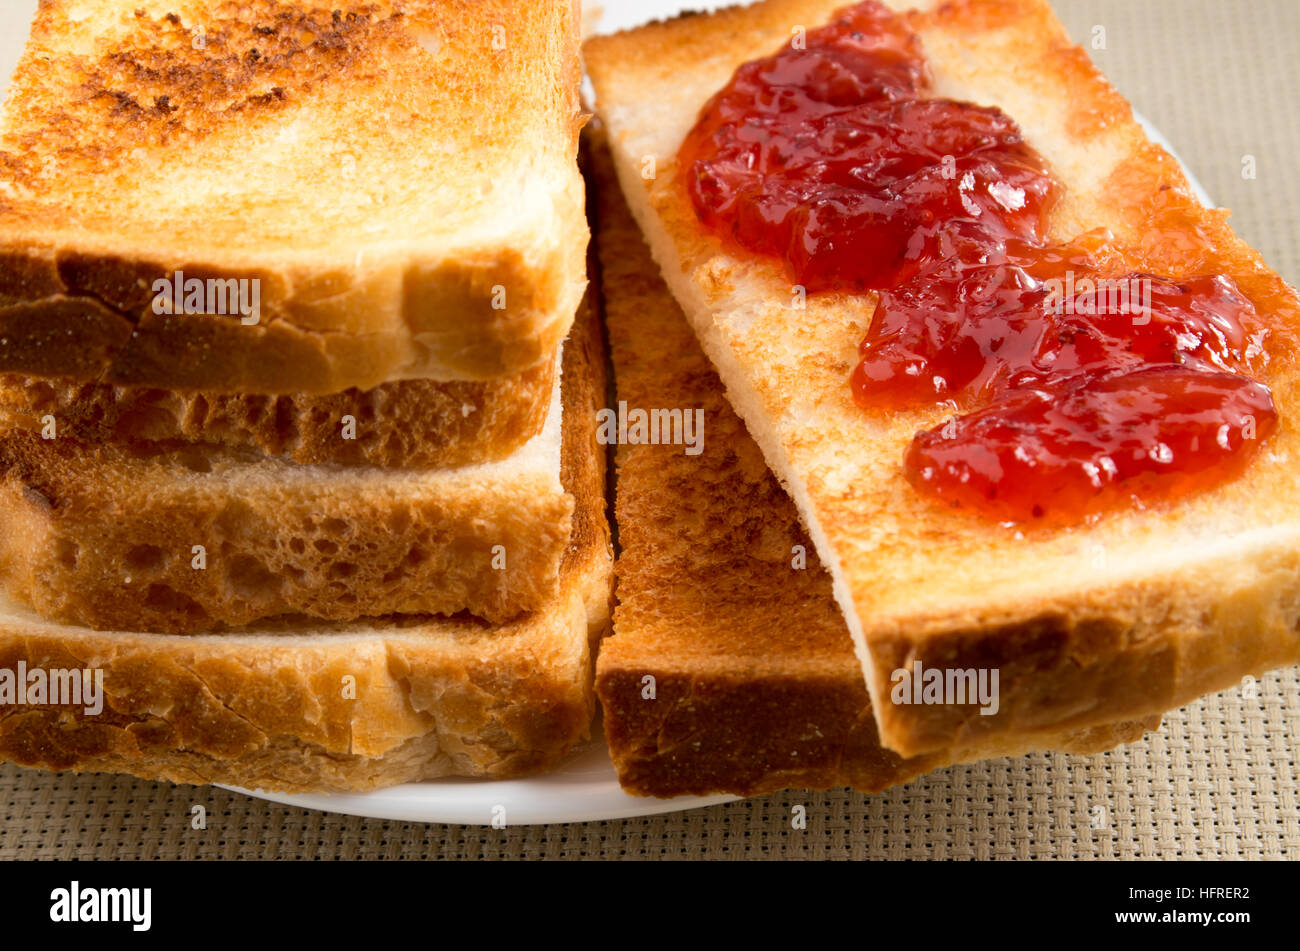 Geröstete Brotscheiben mit Strawberry jam close-up auf einem Tisch mit Geschirr und der Hintergrund jedoch unscharf Stockfoto